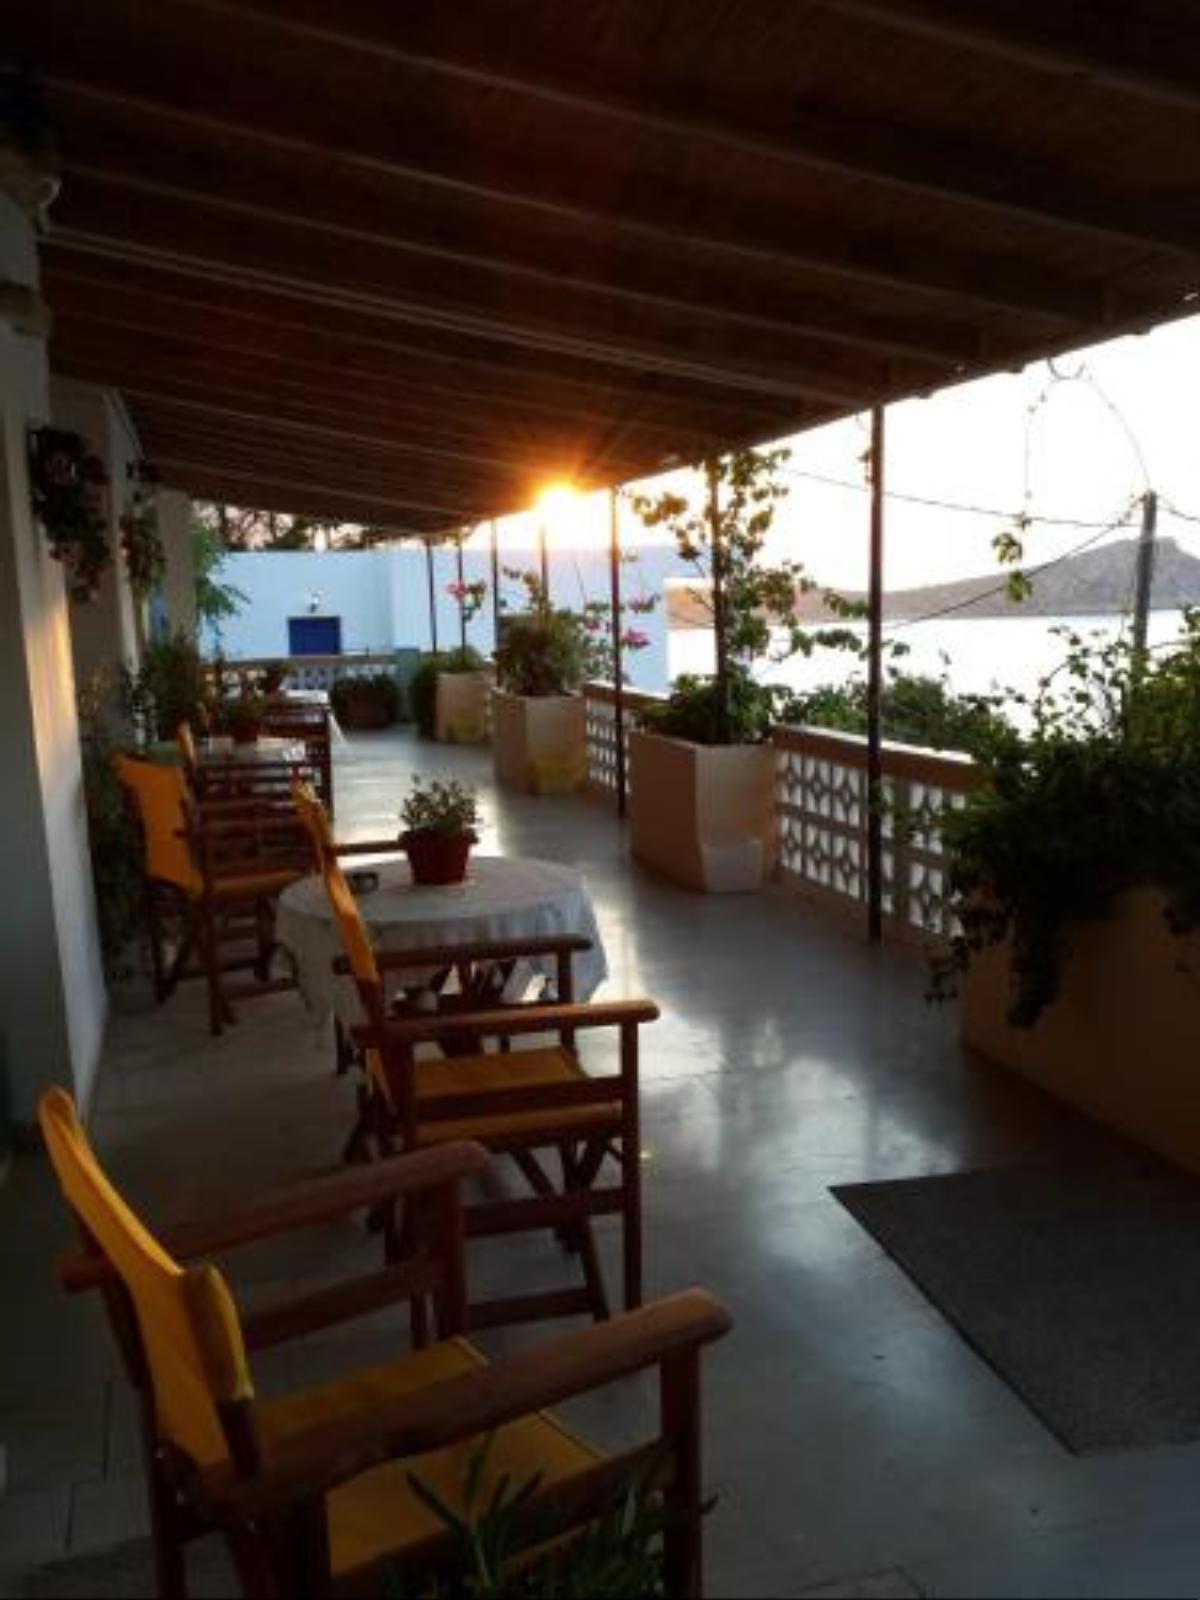 Sunset Hotel Kálymnos Greece